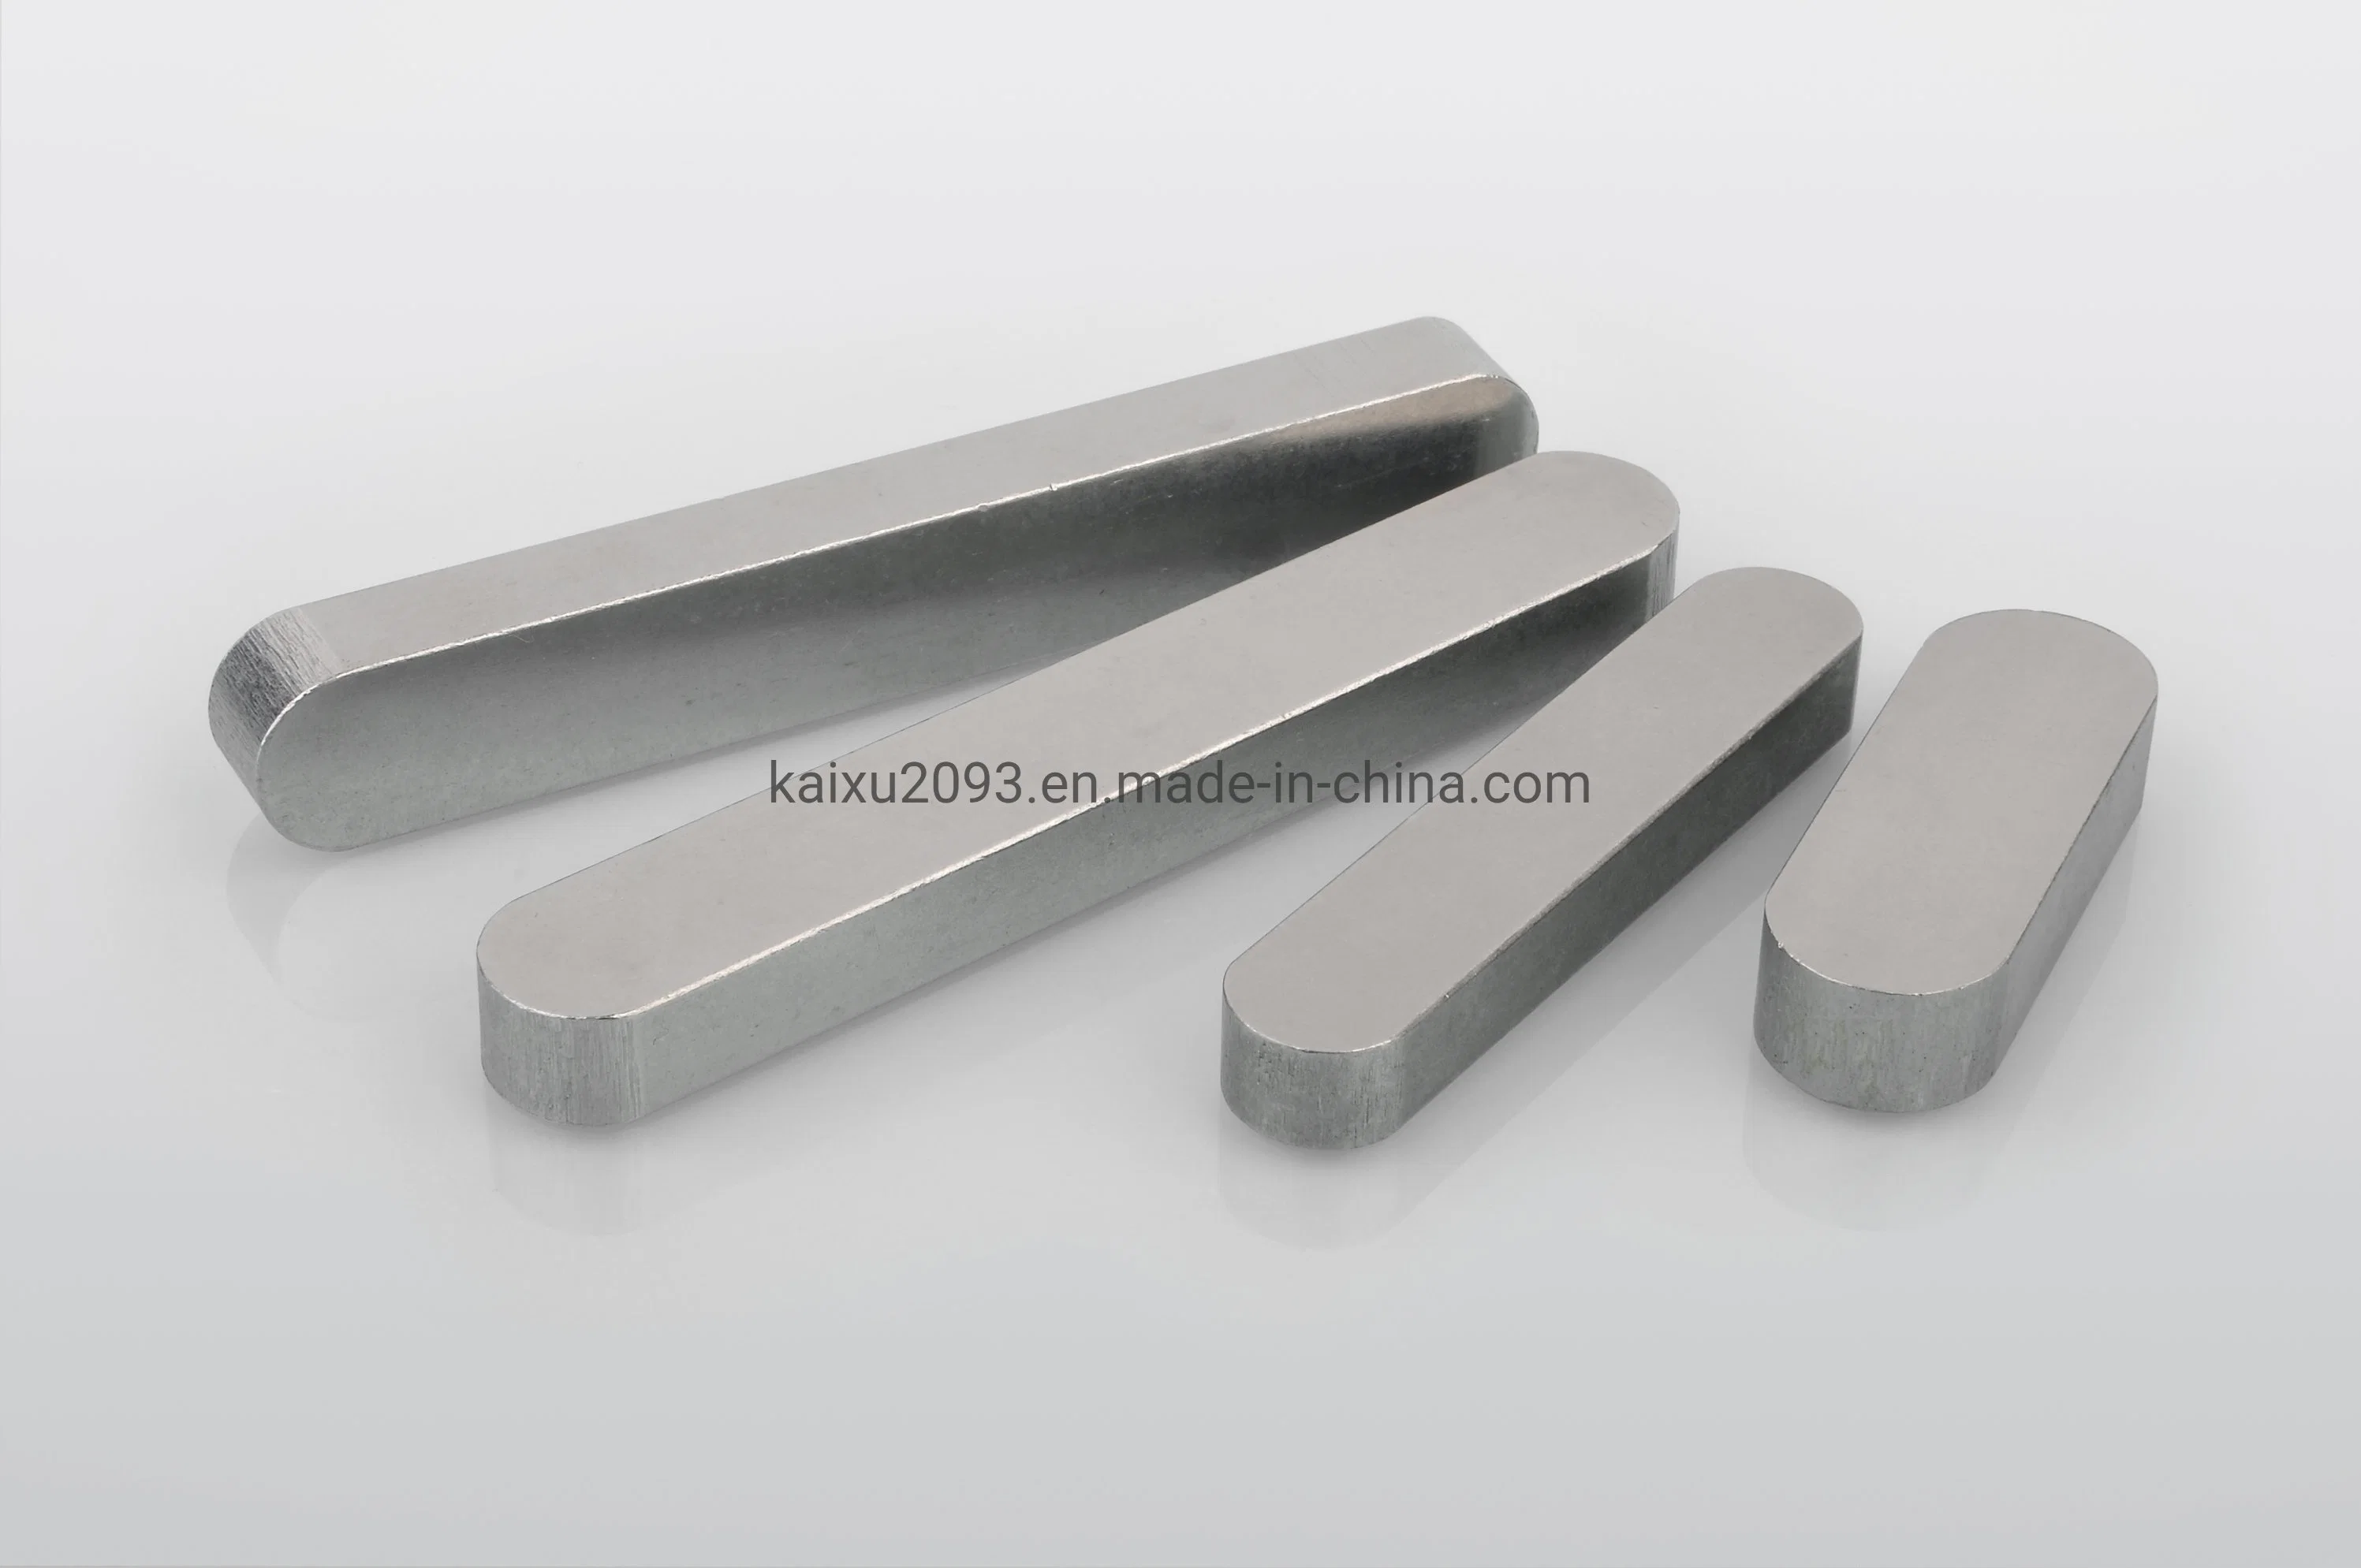 الصين تصنع المفتاح المتوازي من الفولاذ المقاوم للصدأ SS304 SS316 مفاتيح مسطحة